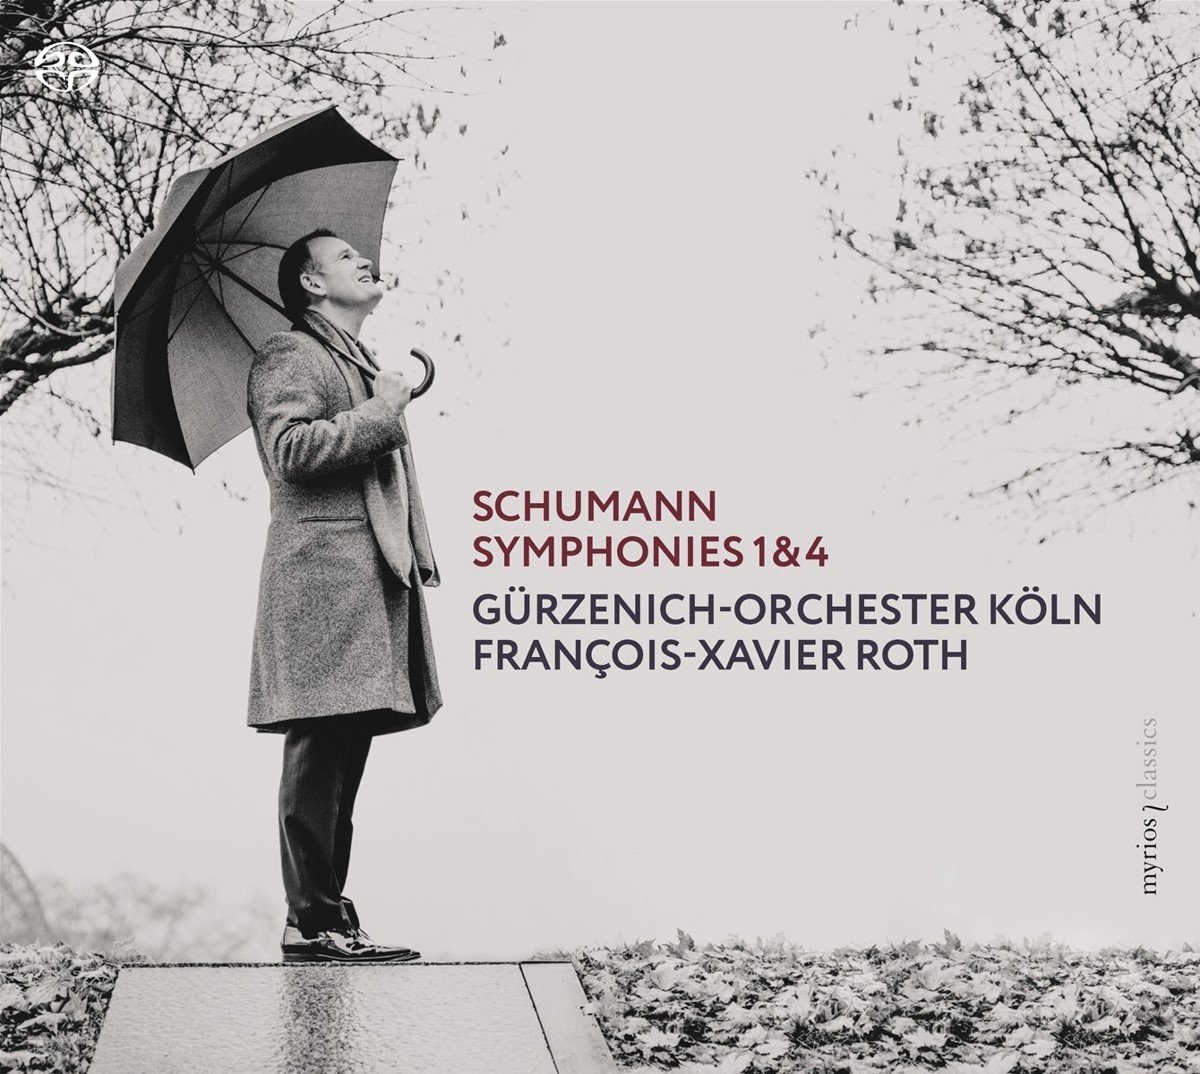 Schumann: Symphonies 1 & 4 | Robert Schumann, Francois-Xavier Roth